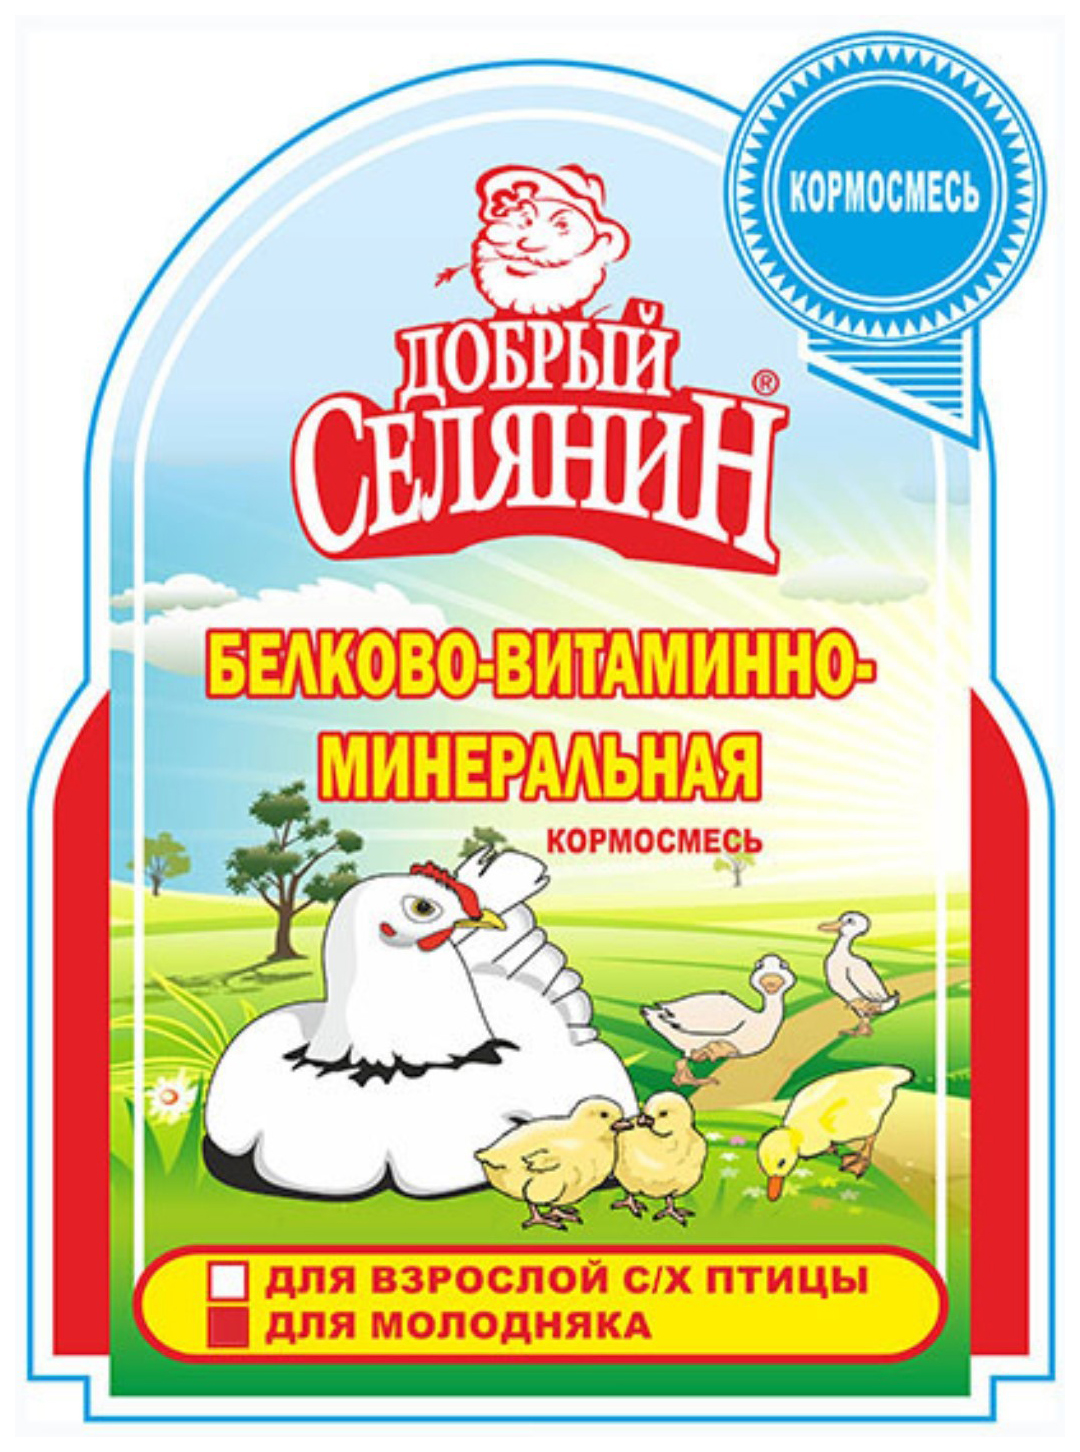 Белково-витаминно-минеральная кормосмесь Мирагро Добрый селянин для с/х птиц, 1,7 кг